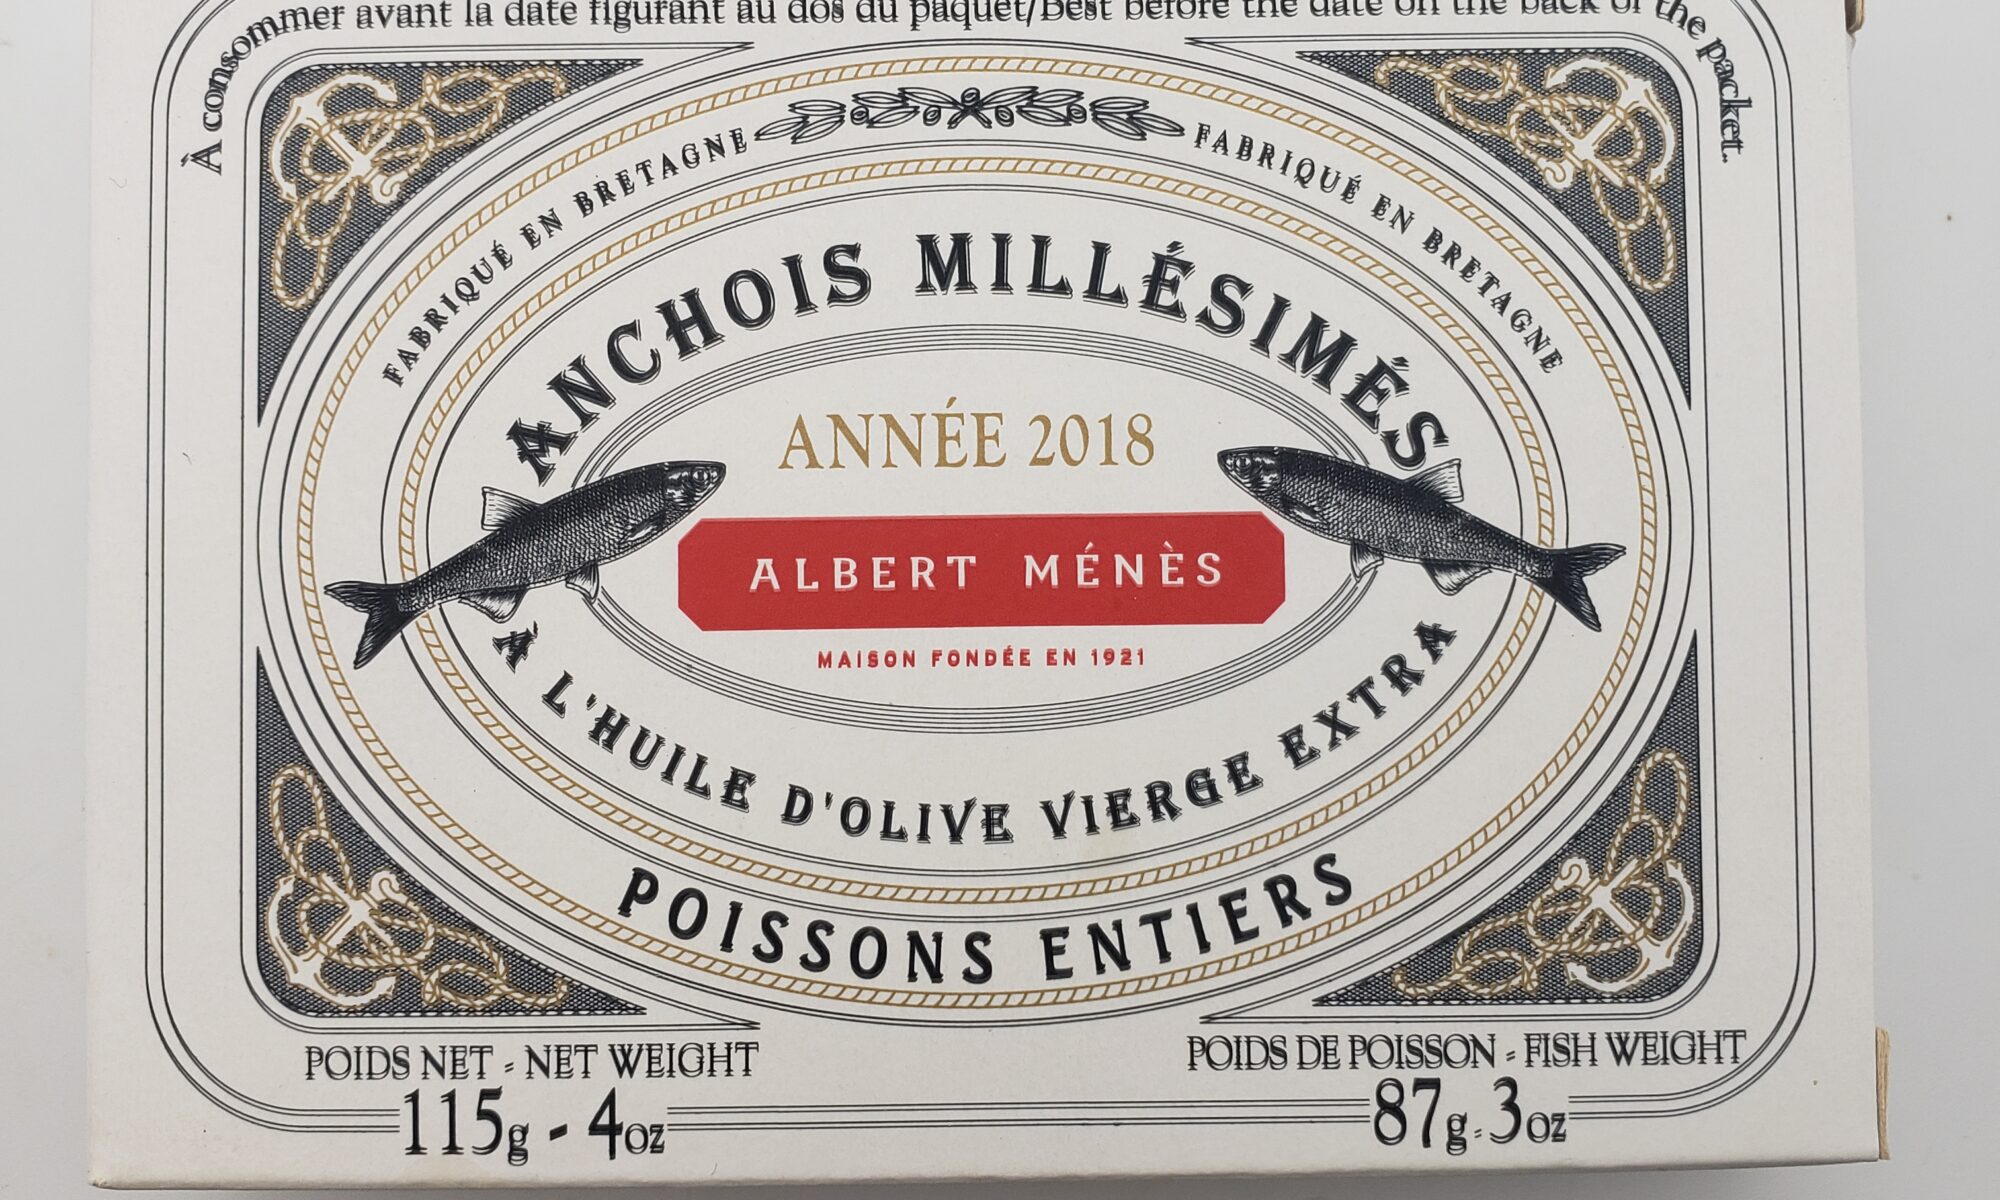 Image of Albert Menes vintage anchovies